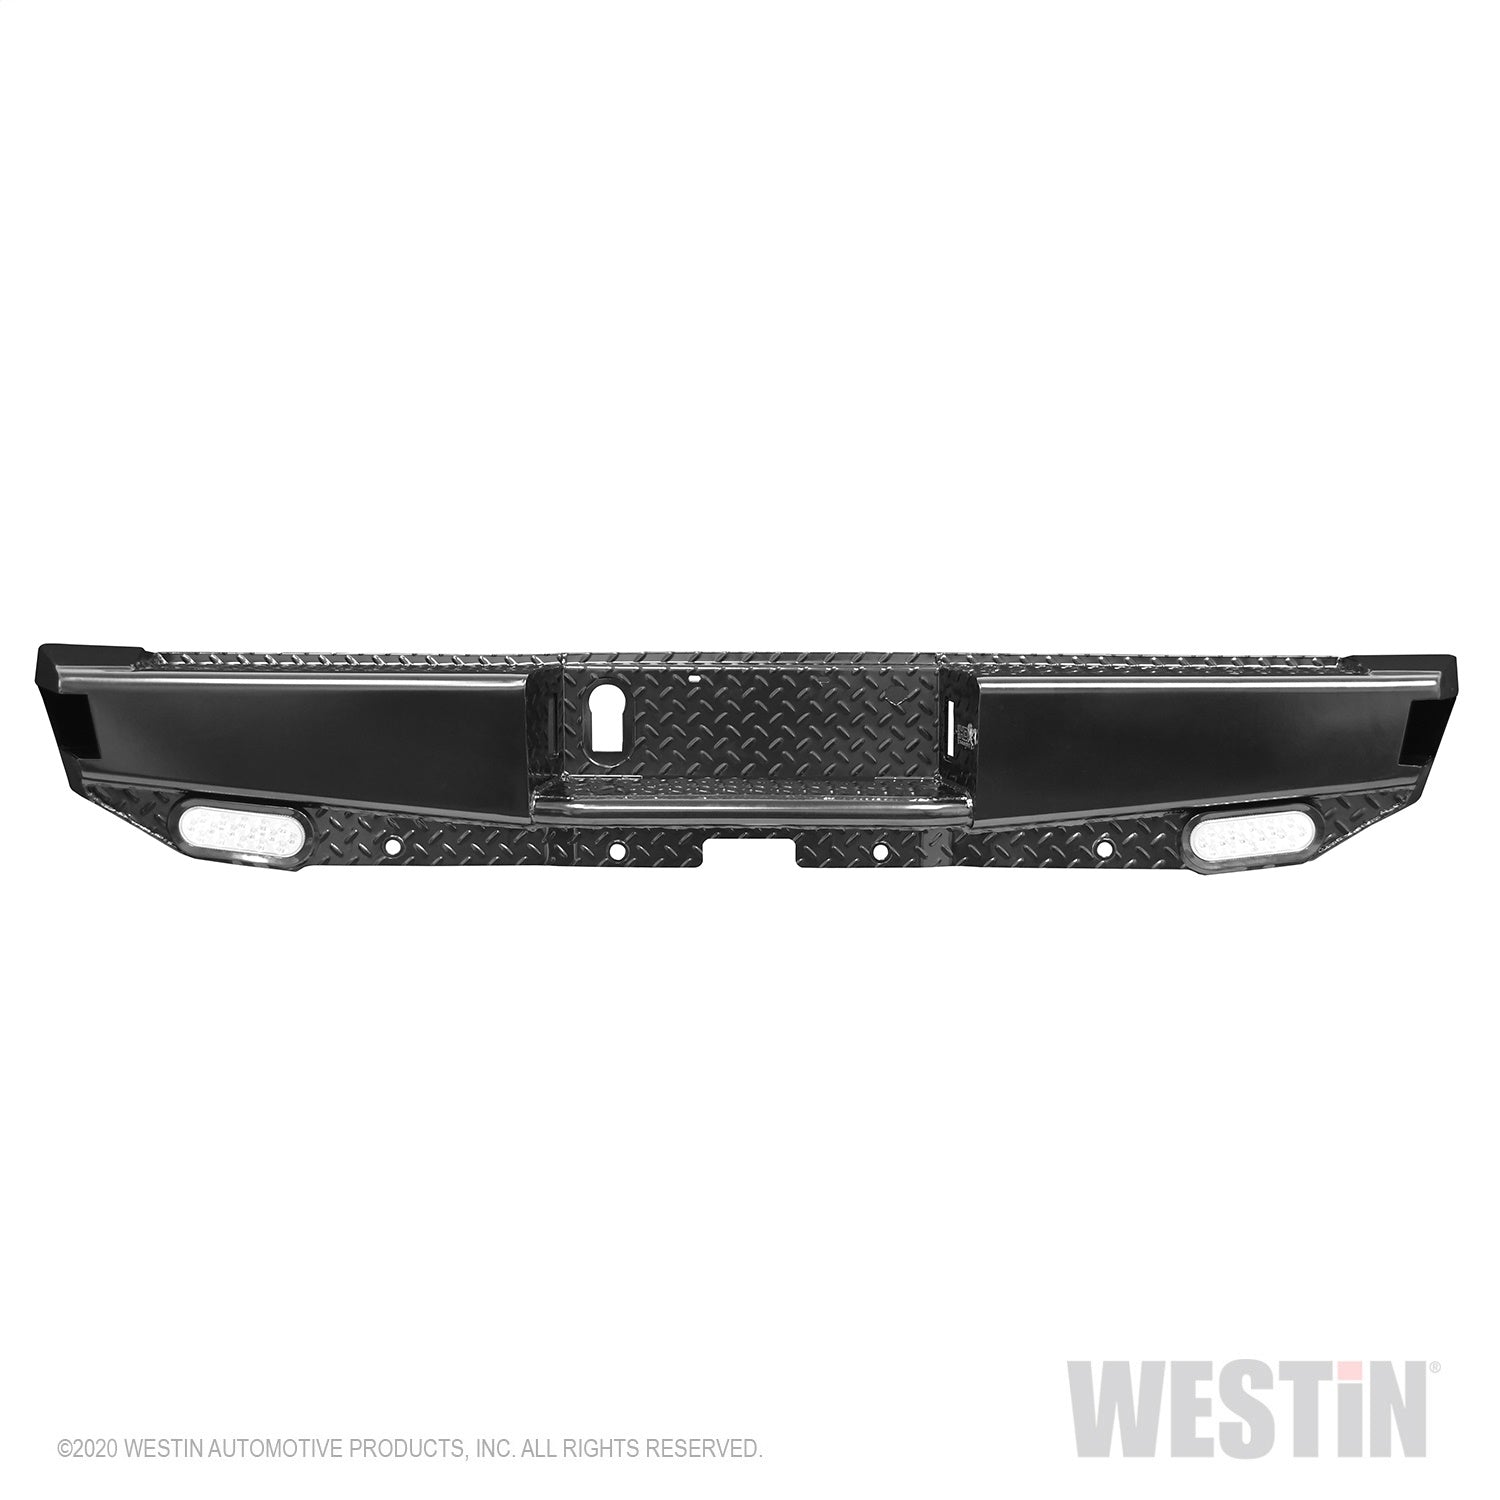 Westin 58-341105 HDX Bandit Rear Bumper Fits 15-20 F-150